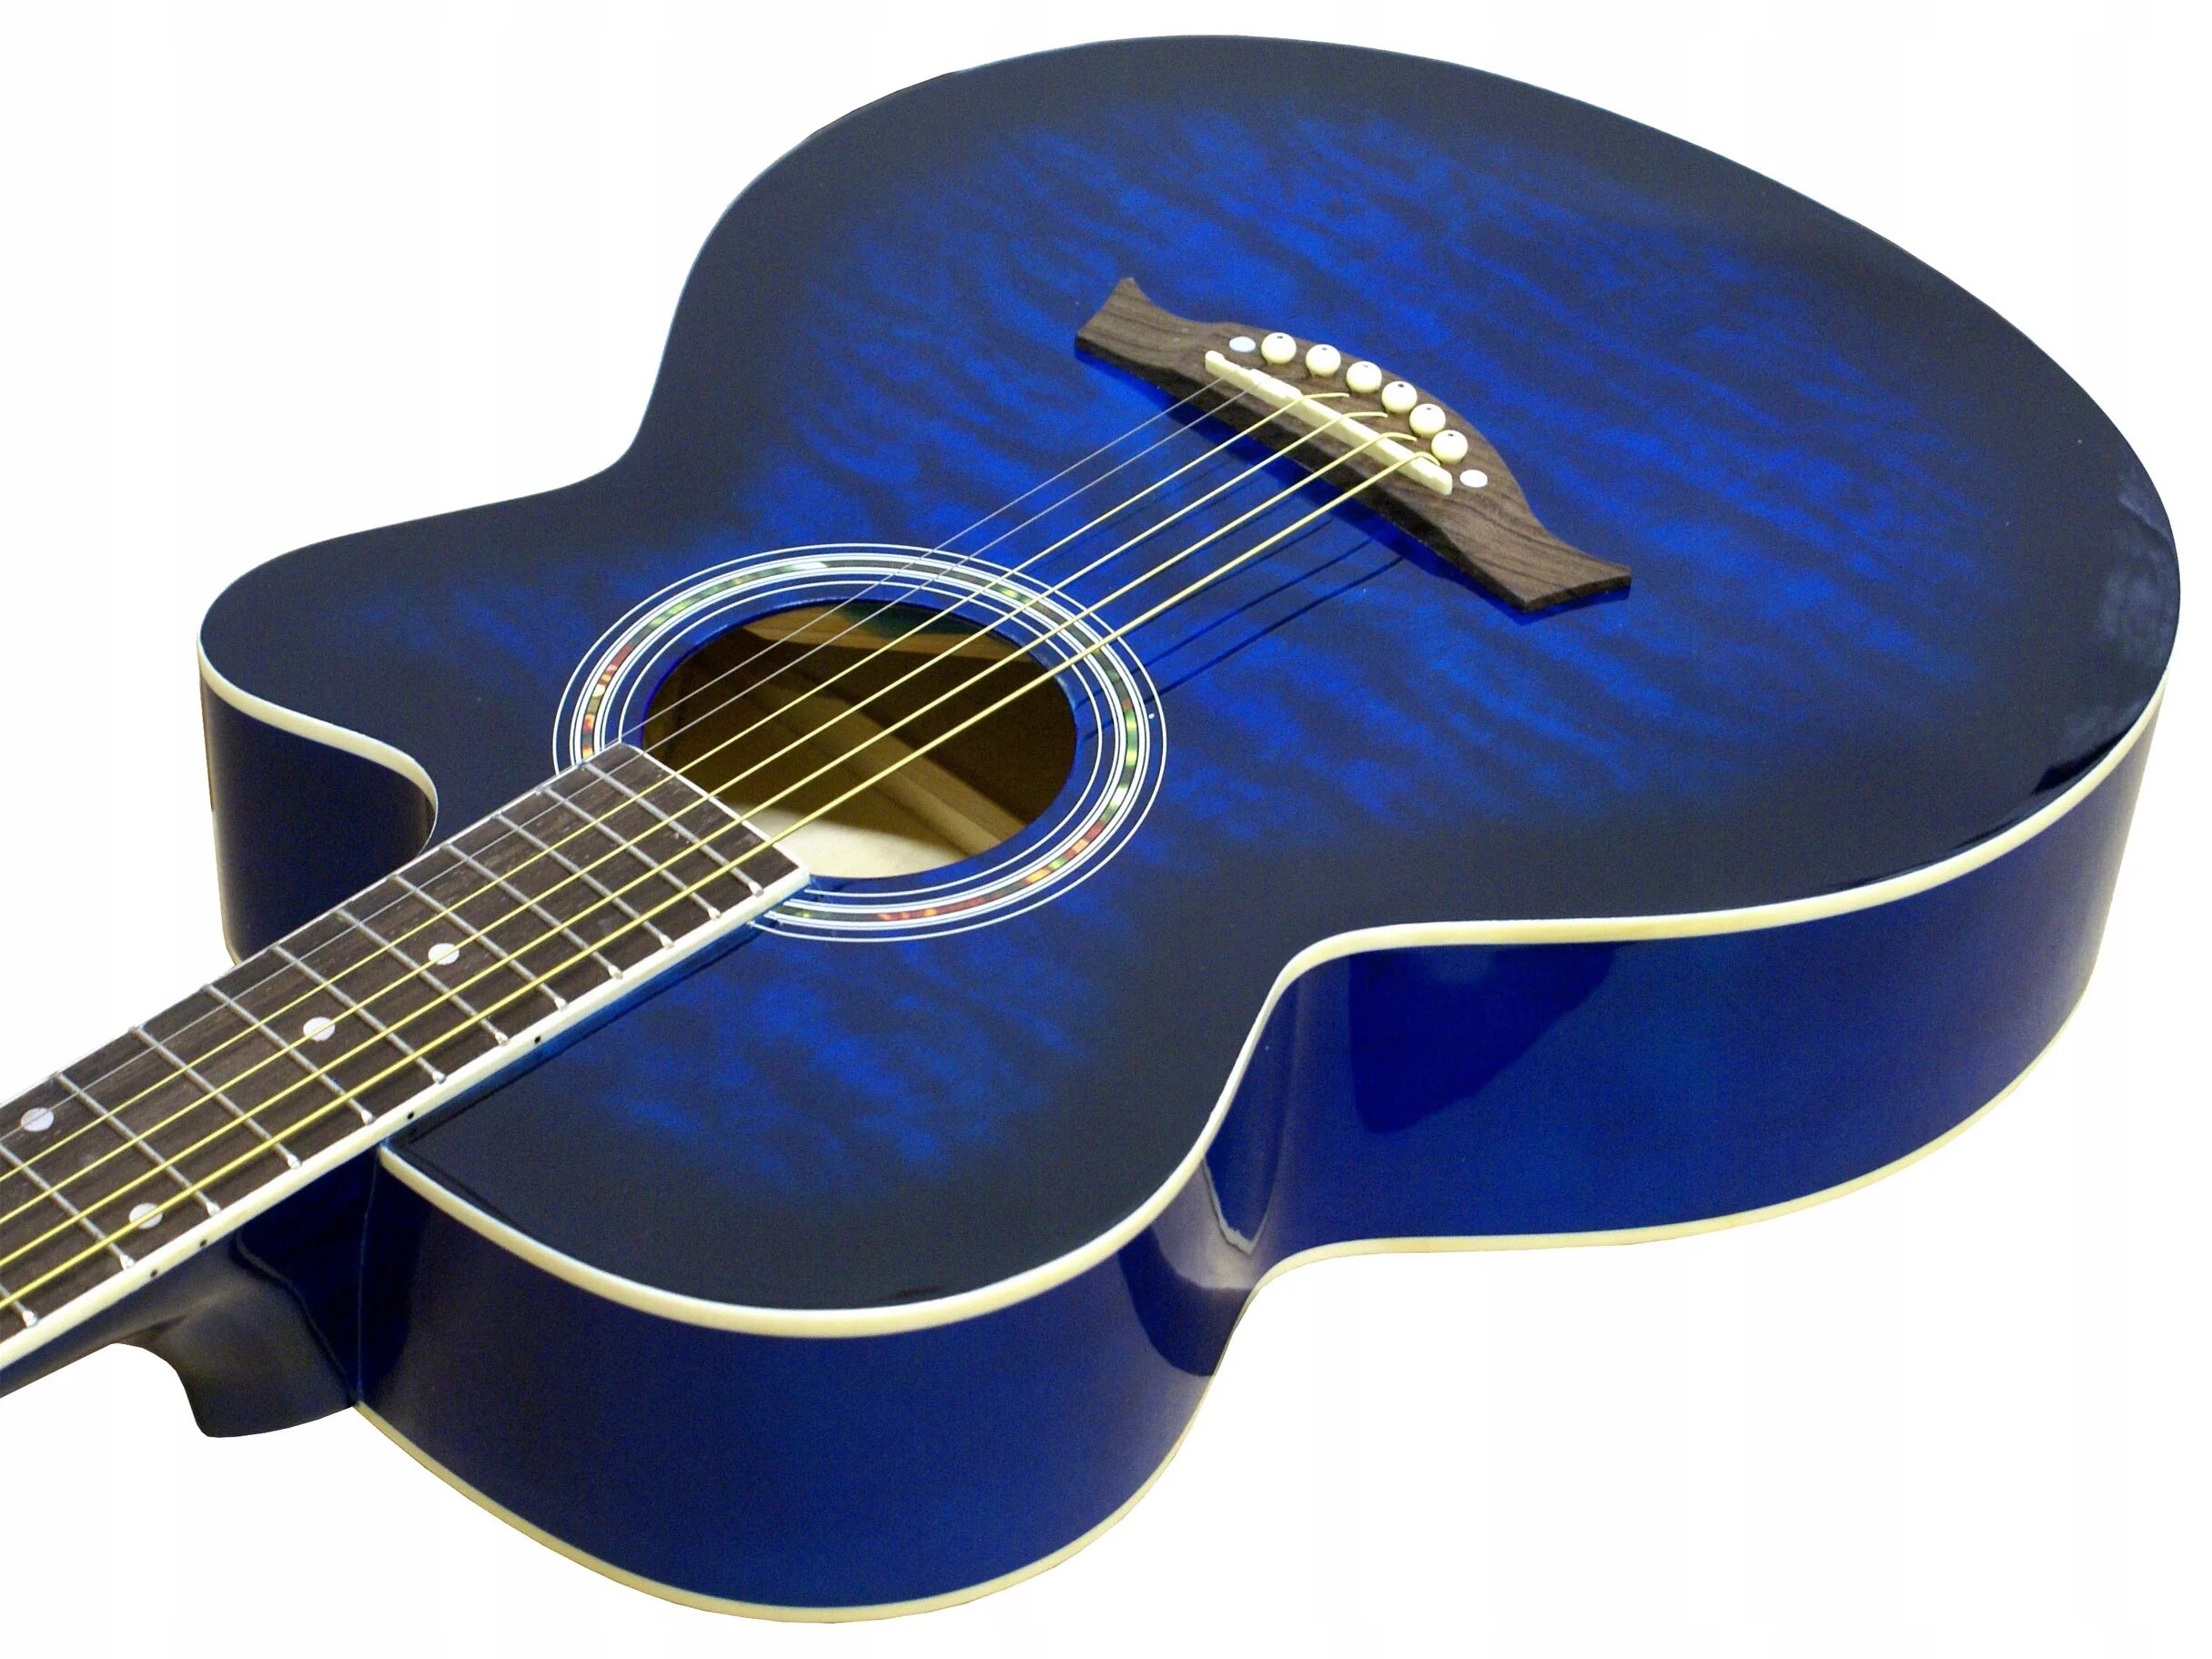 Core model 4050 акустическая гитара. Электроакустические гитары cоlgon. Дорогие акустические гитары.